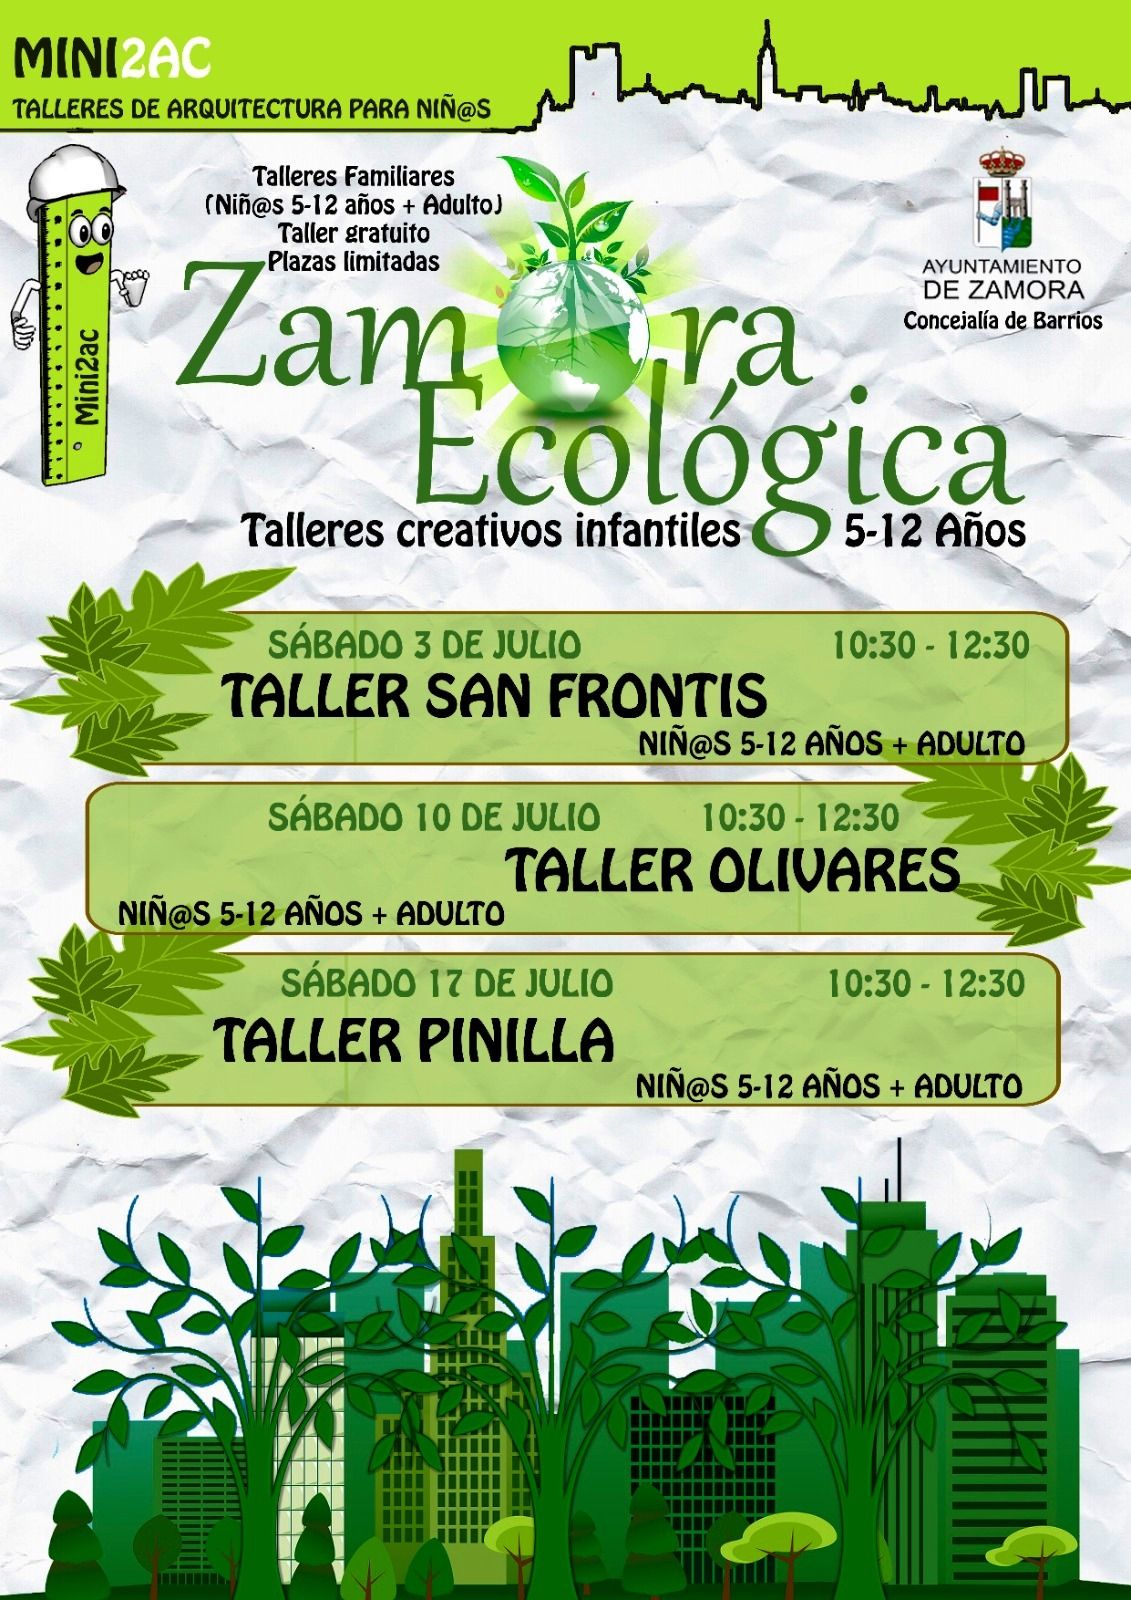 Talleres Zamora Ecológica.